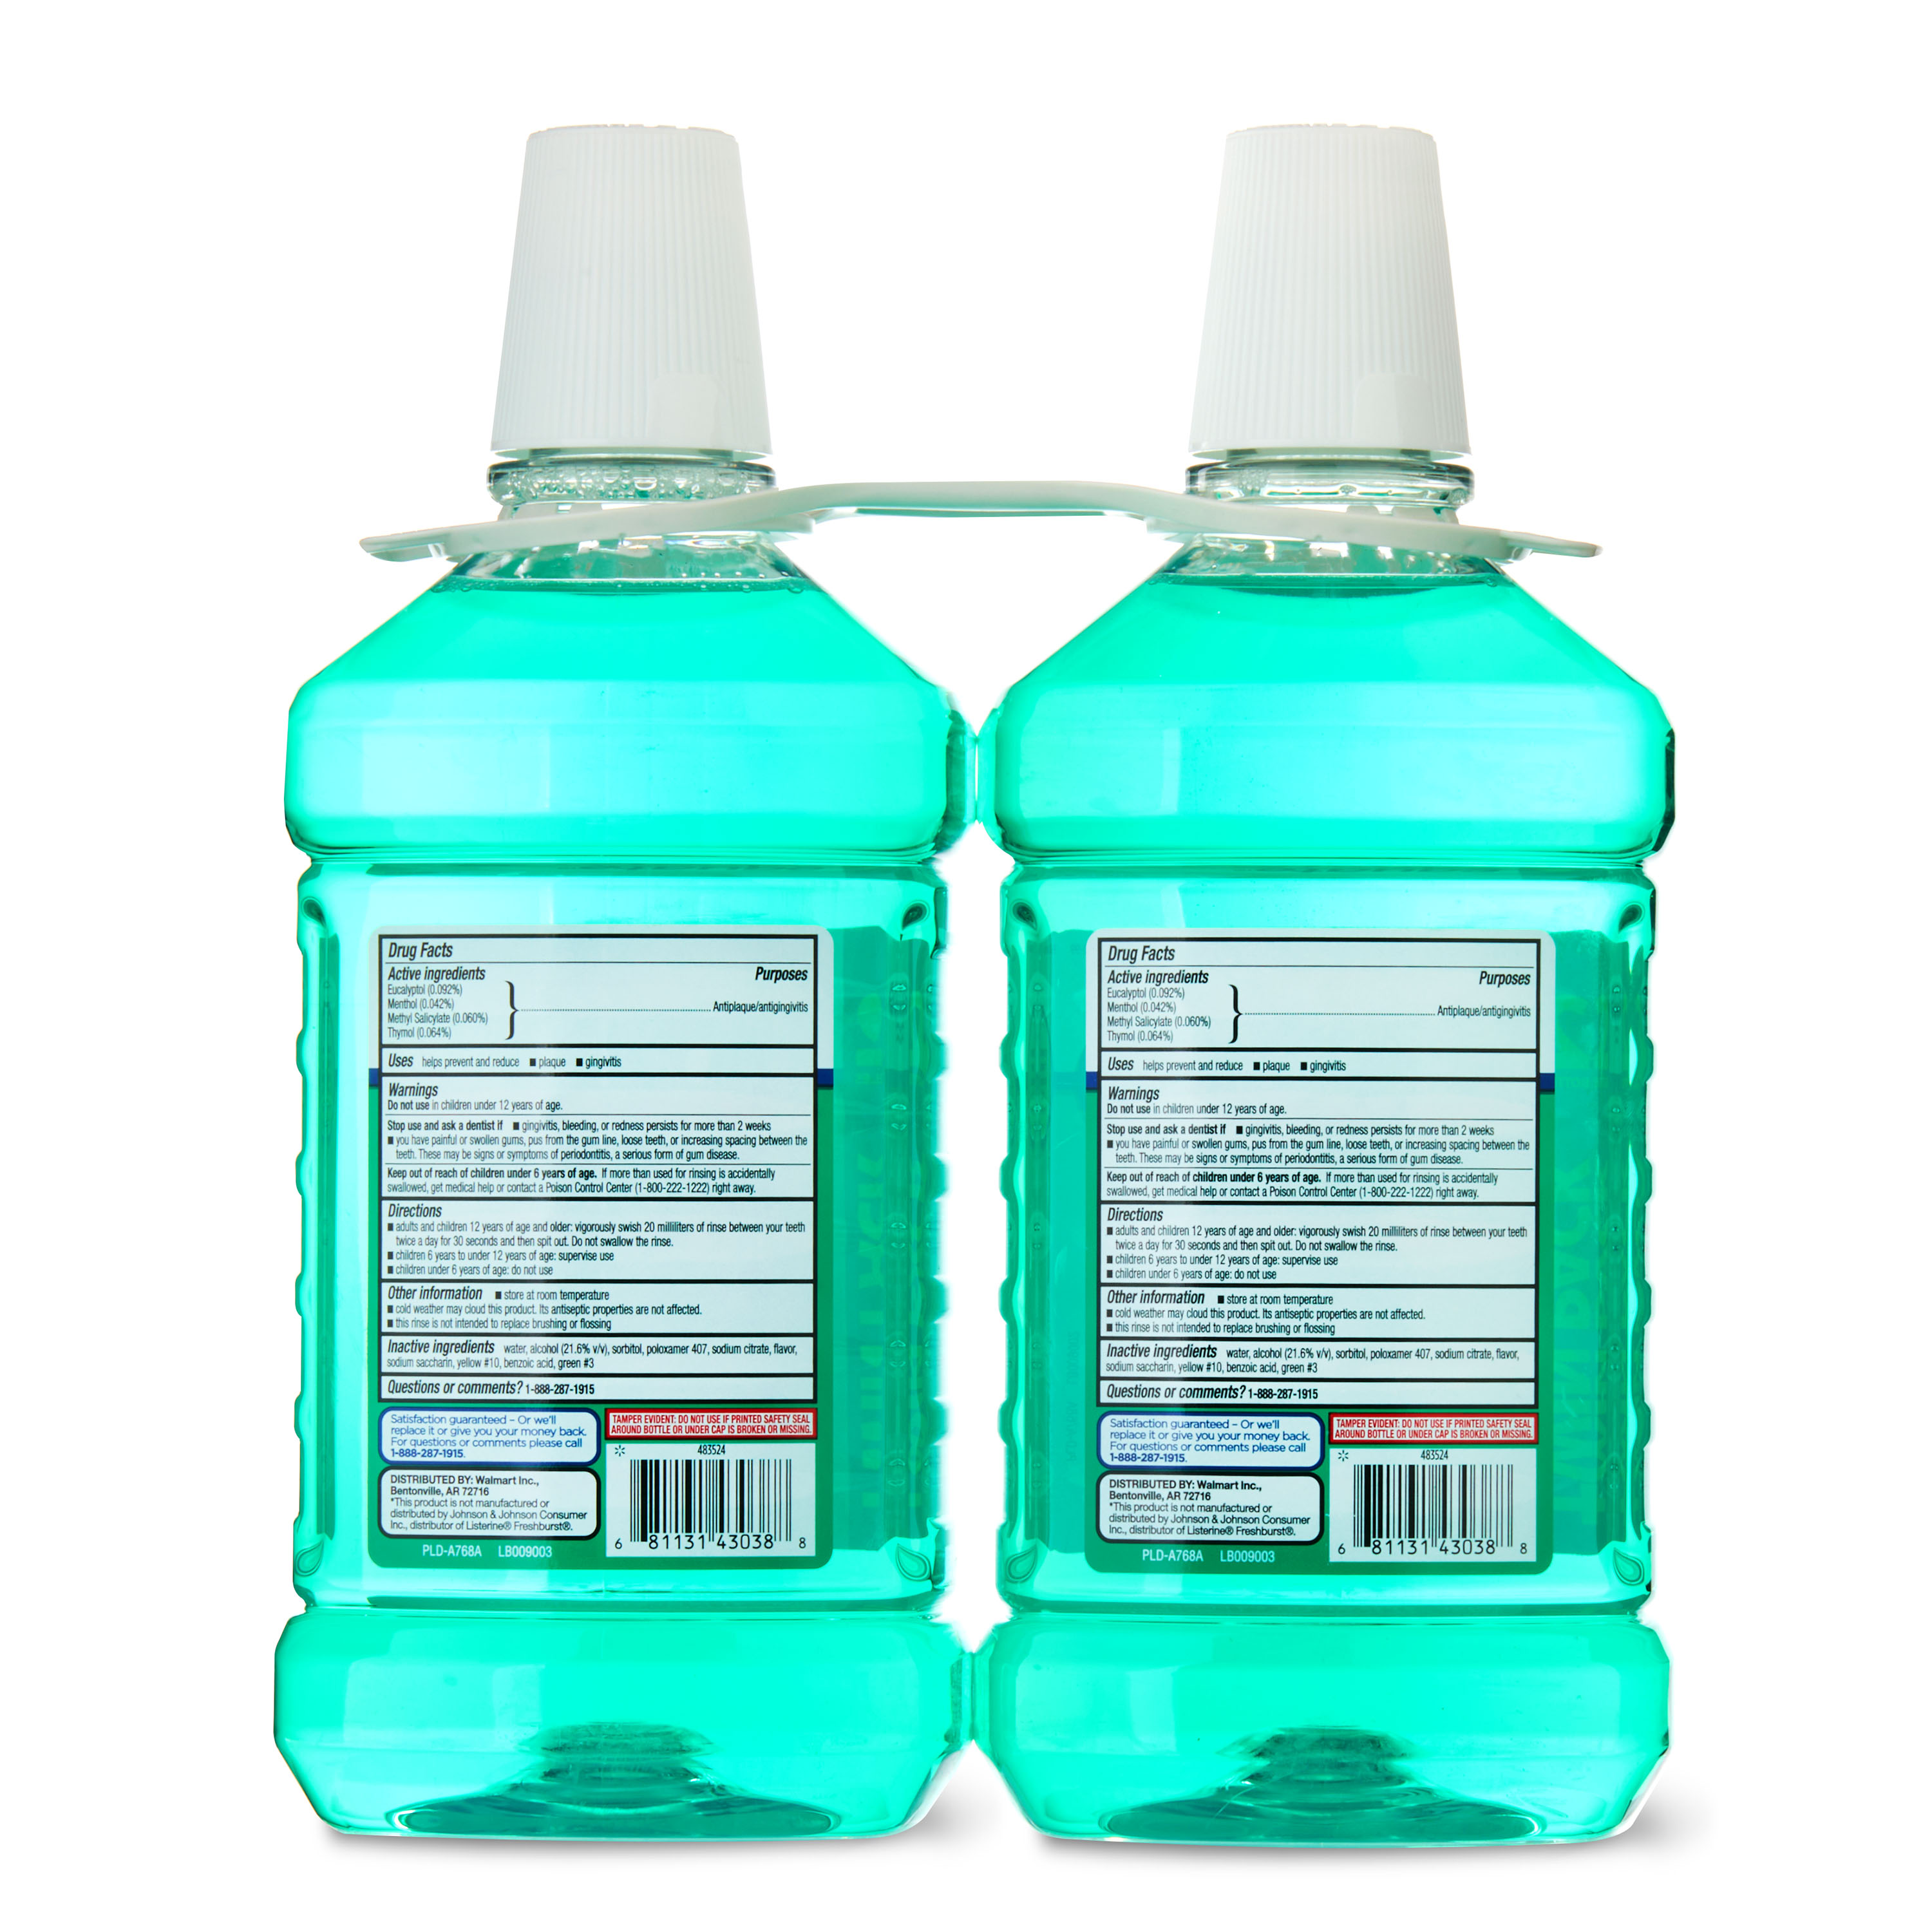 Equate Antiseptic Mouthwash, Mint Blast, Twinpack, 2 Bottles, 2 x 1.5 Liters (50.7 fl oz) - image 5 of 7